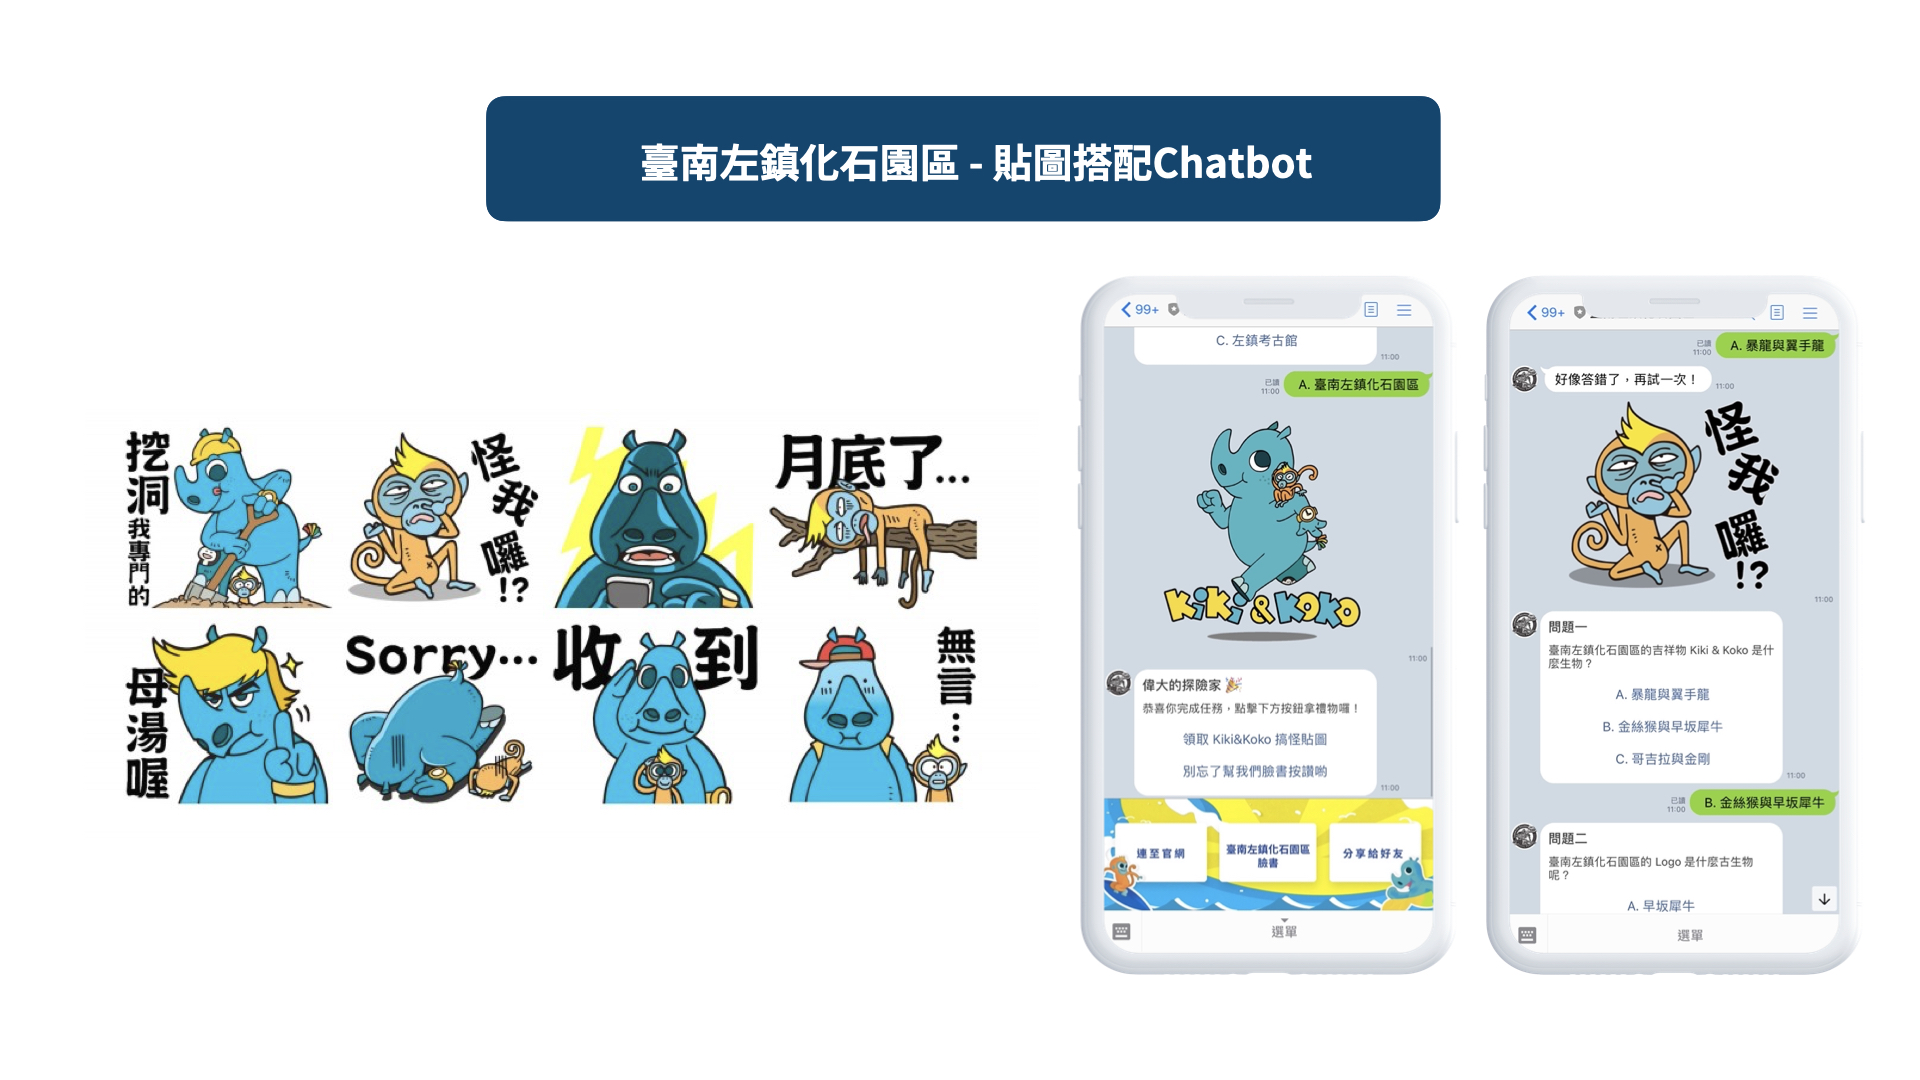 臺南左鎮化石園區-LINE企業贊助貼圖搭配Chatbot